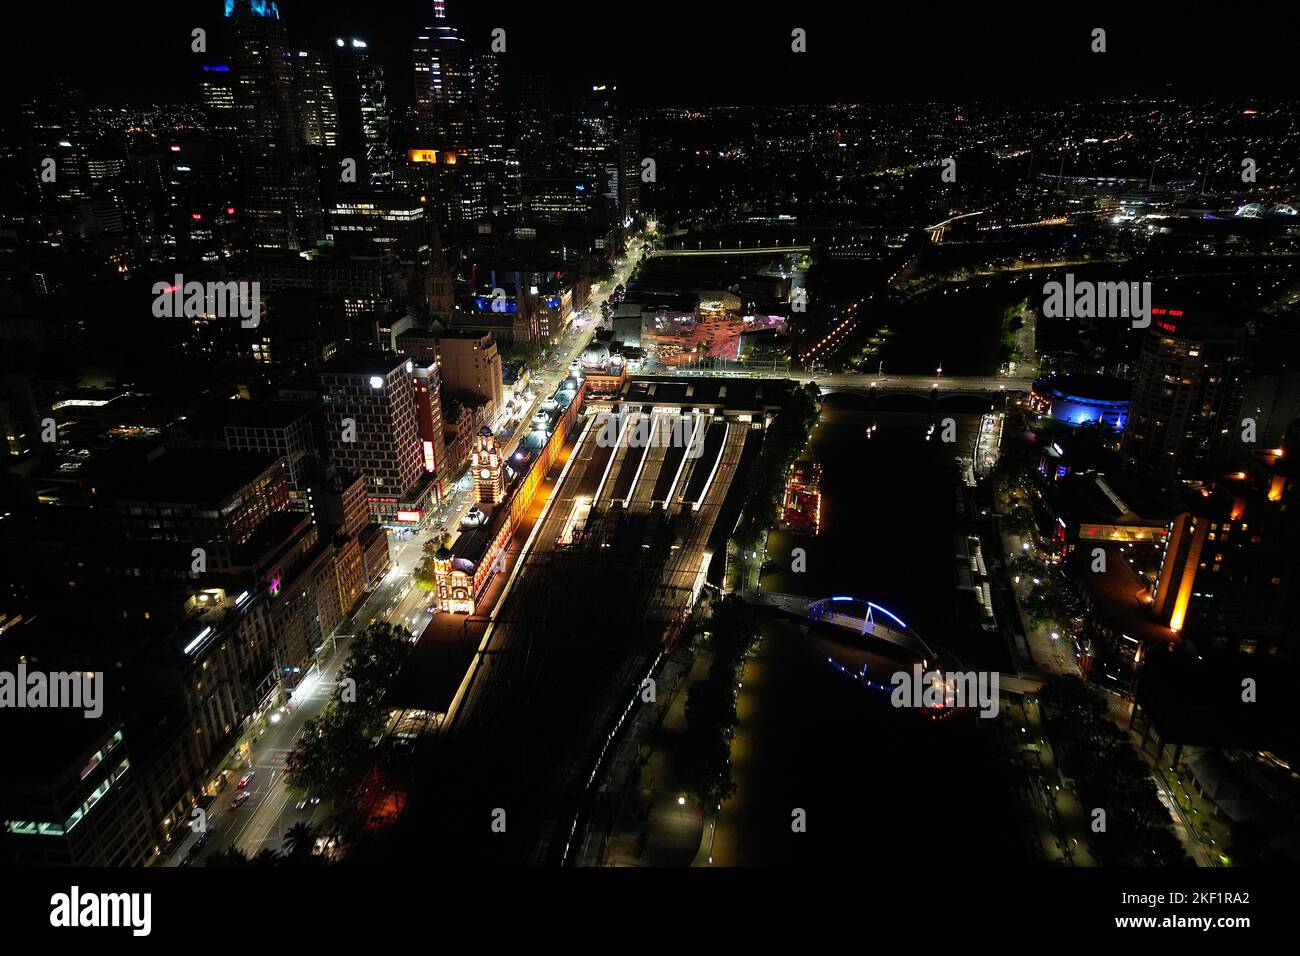 Vista aerea della stazione ferroviaria di Flinders Street di notte, Melbourne, Australia Foto Stock